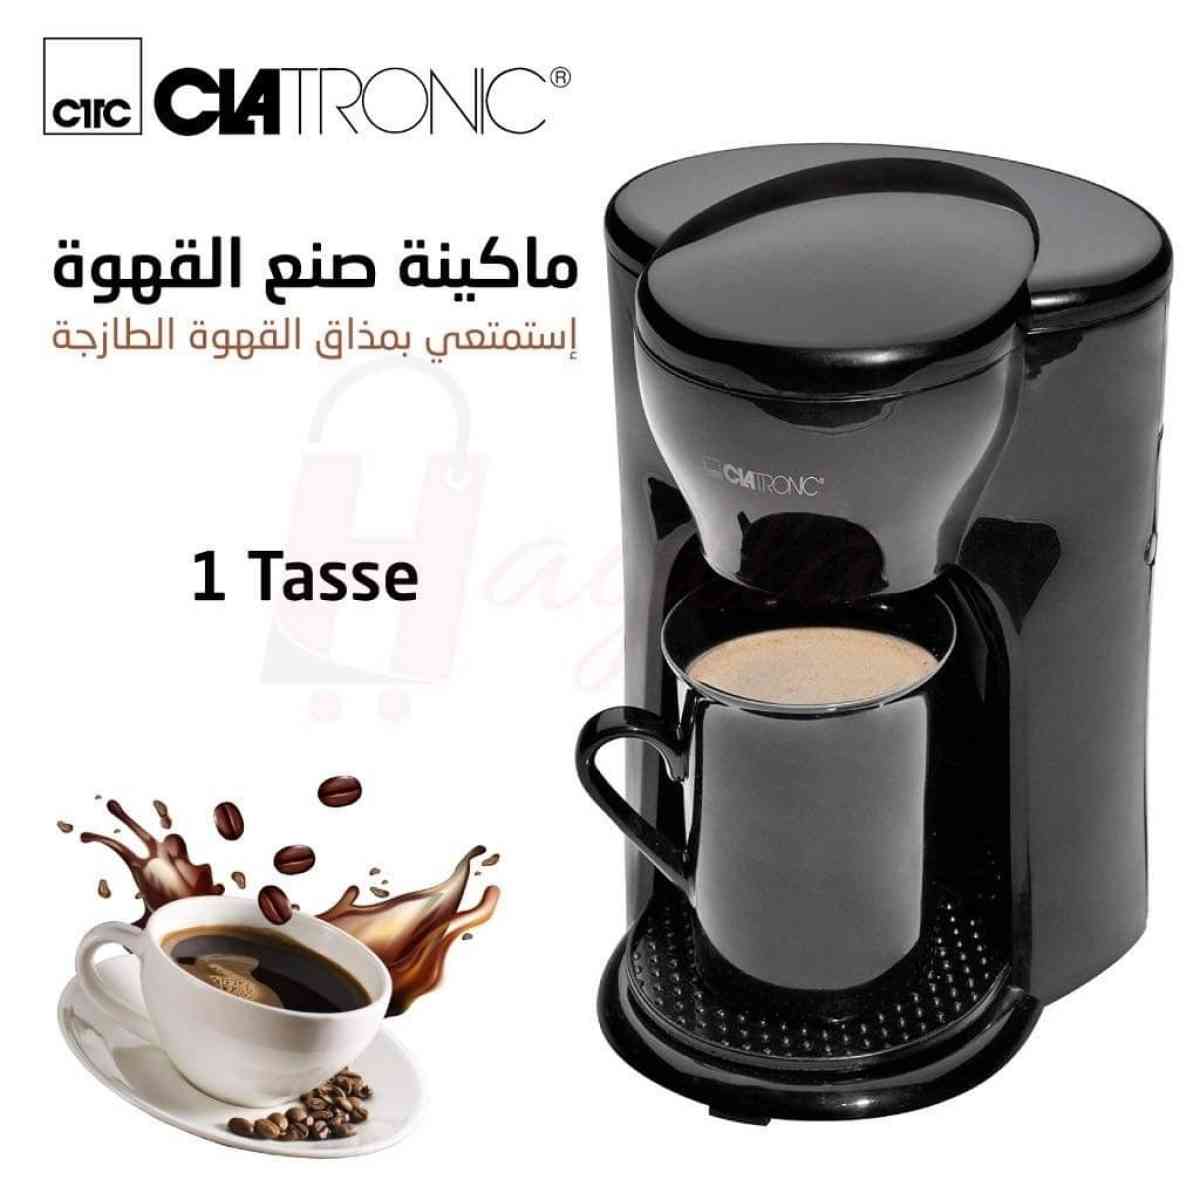 آلة صنع القهوةمن clatronic